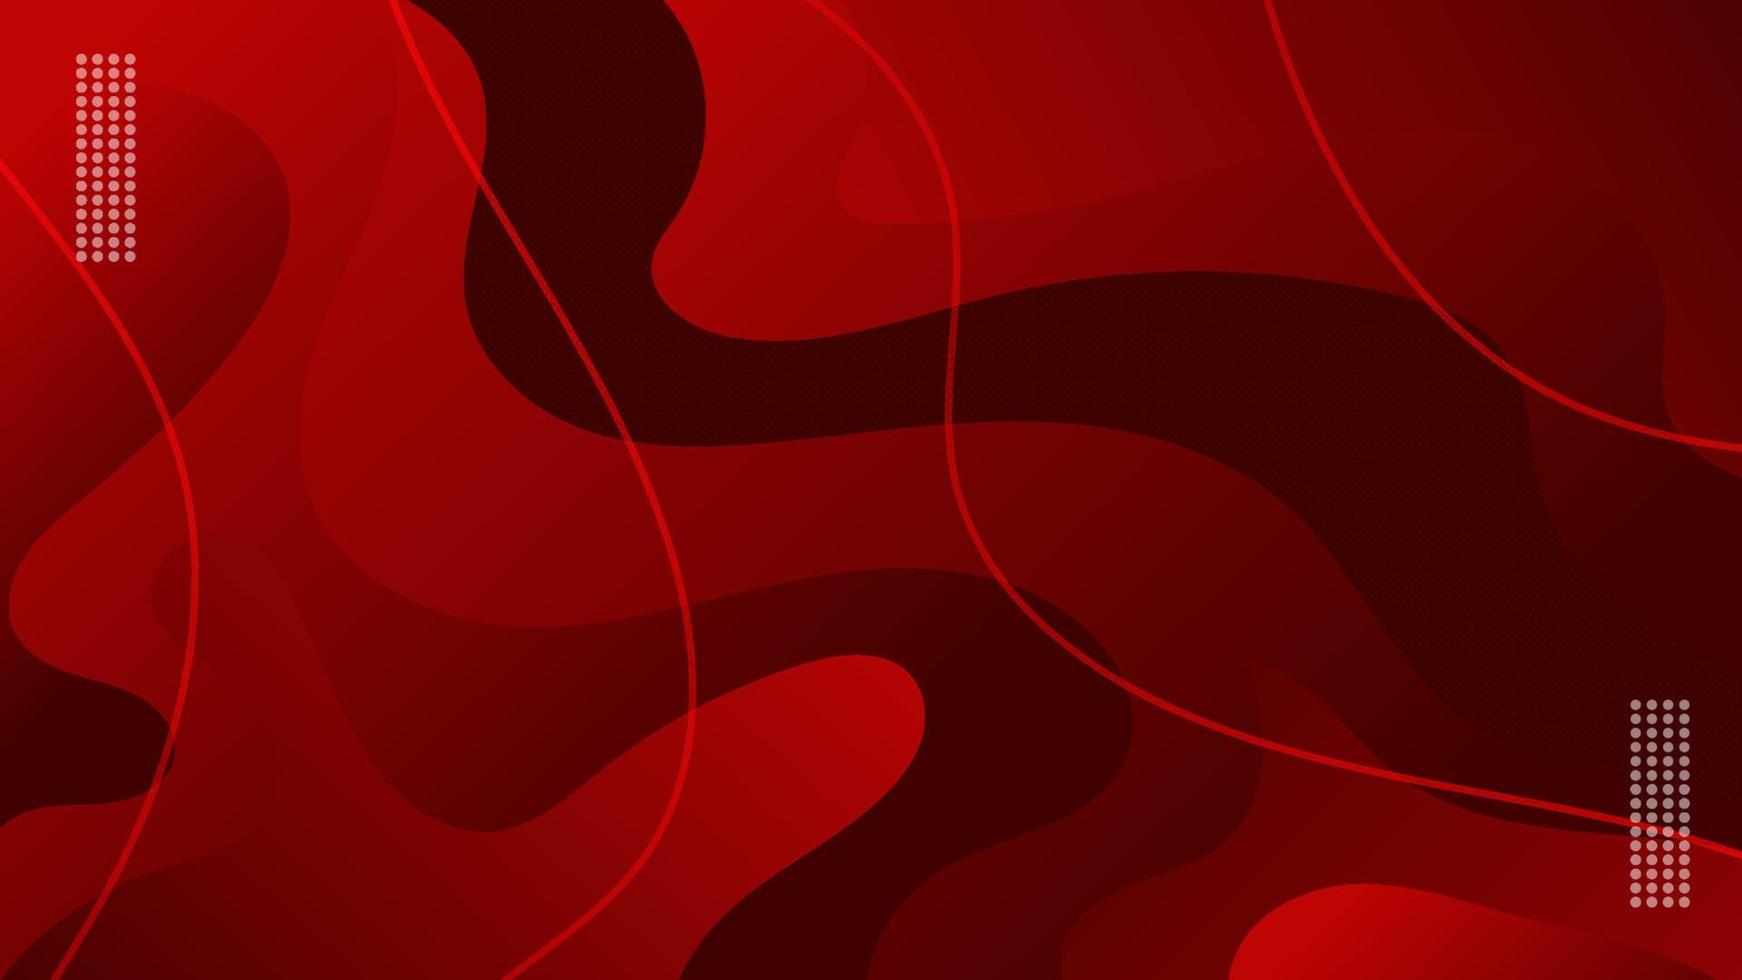 Sự kết hợp màu đỏ rực rỡ và phong cách sóng đầy trỗi nghĩa là sẽ mang lại cho bạn một hình ảnh độc đáo và mới mẻ nhất. Ảnh hoàn hảo để làm bố cục cho trang web, bìa sách hoặc phù hợp với những project sáng tạo hơn nữa.